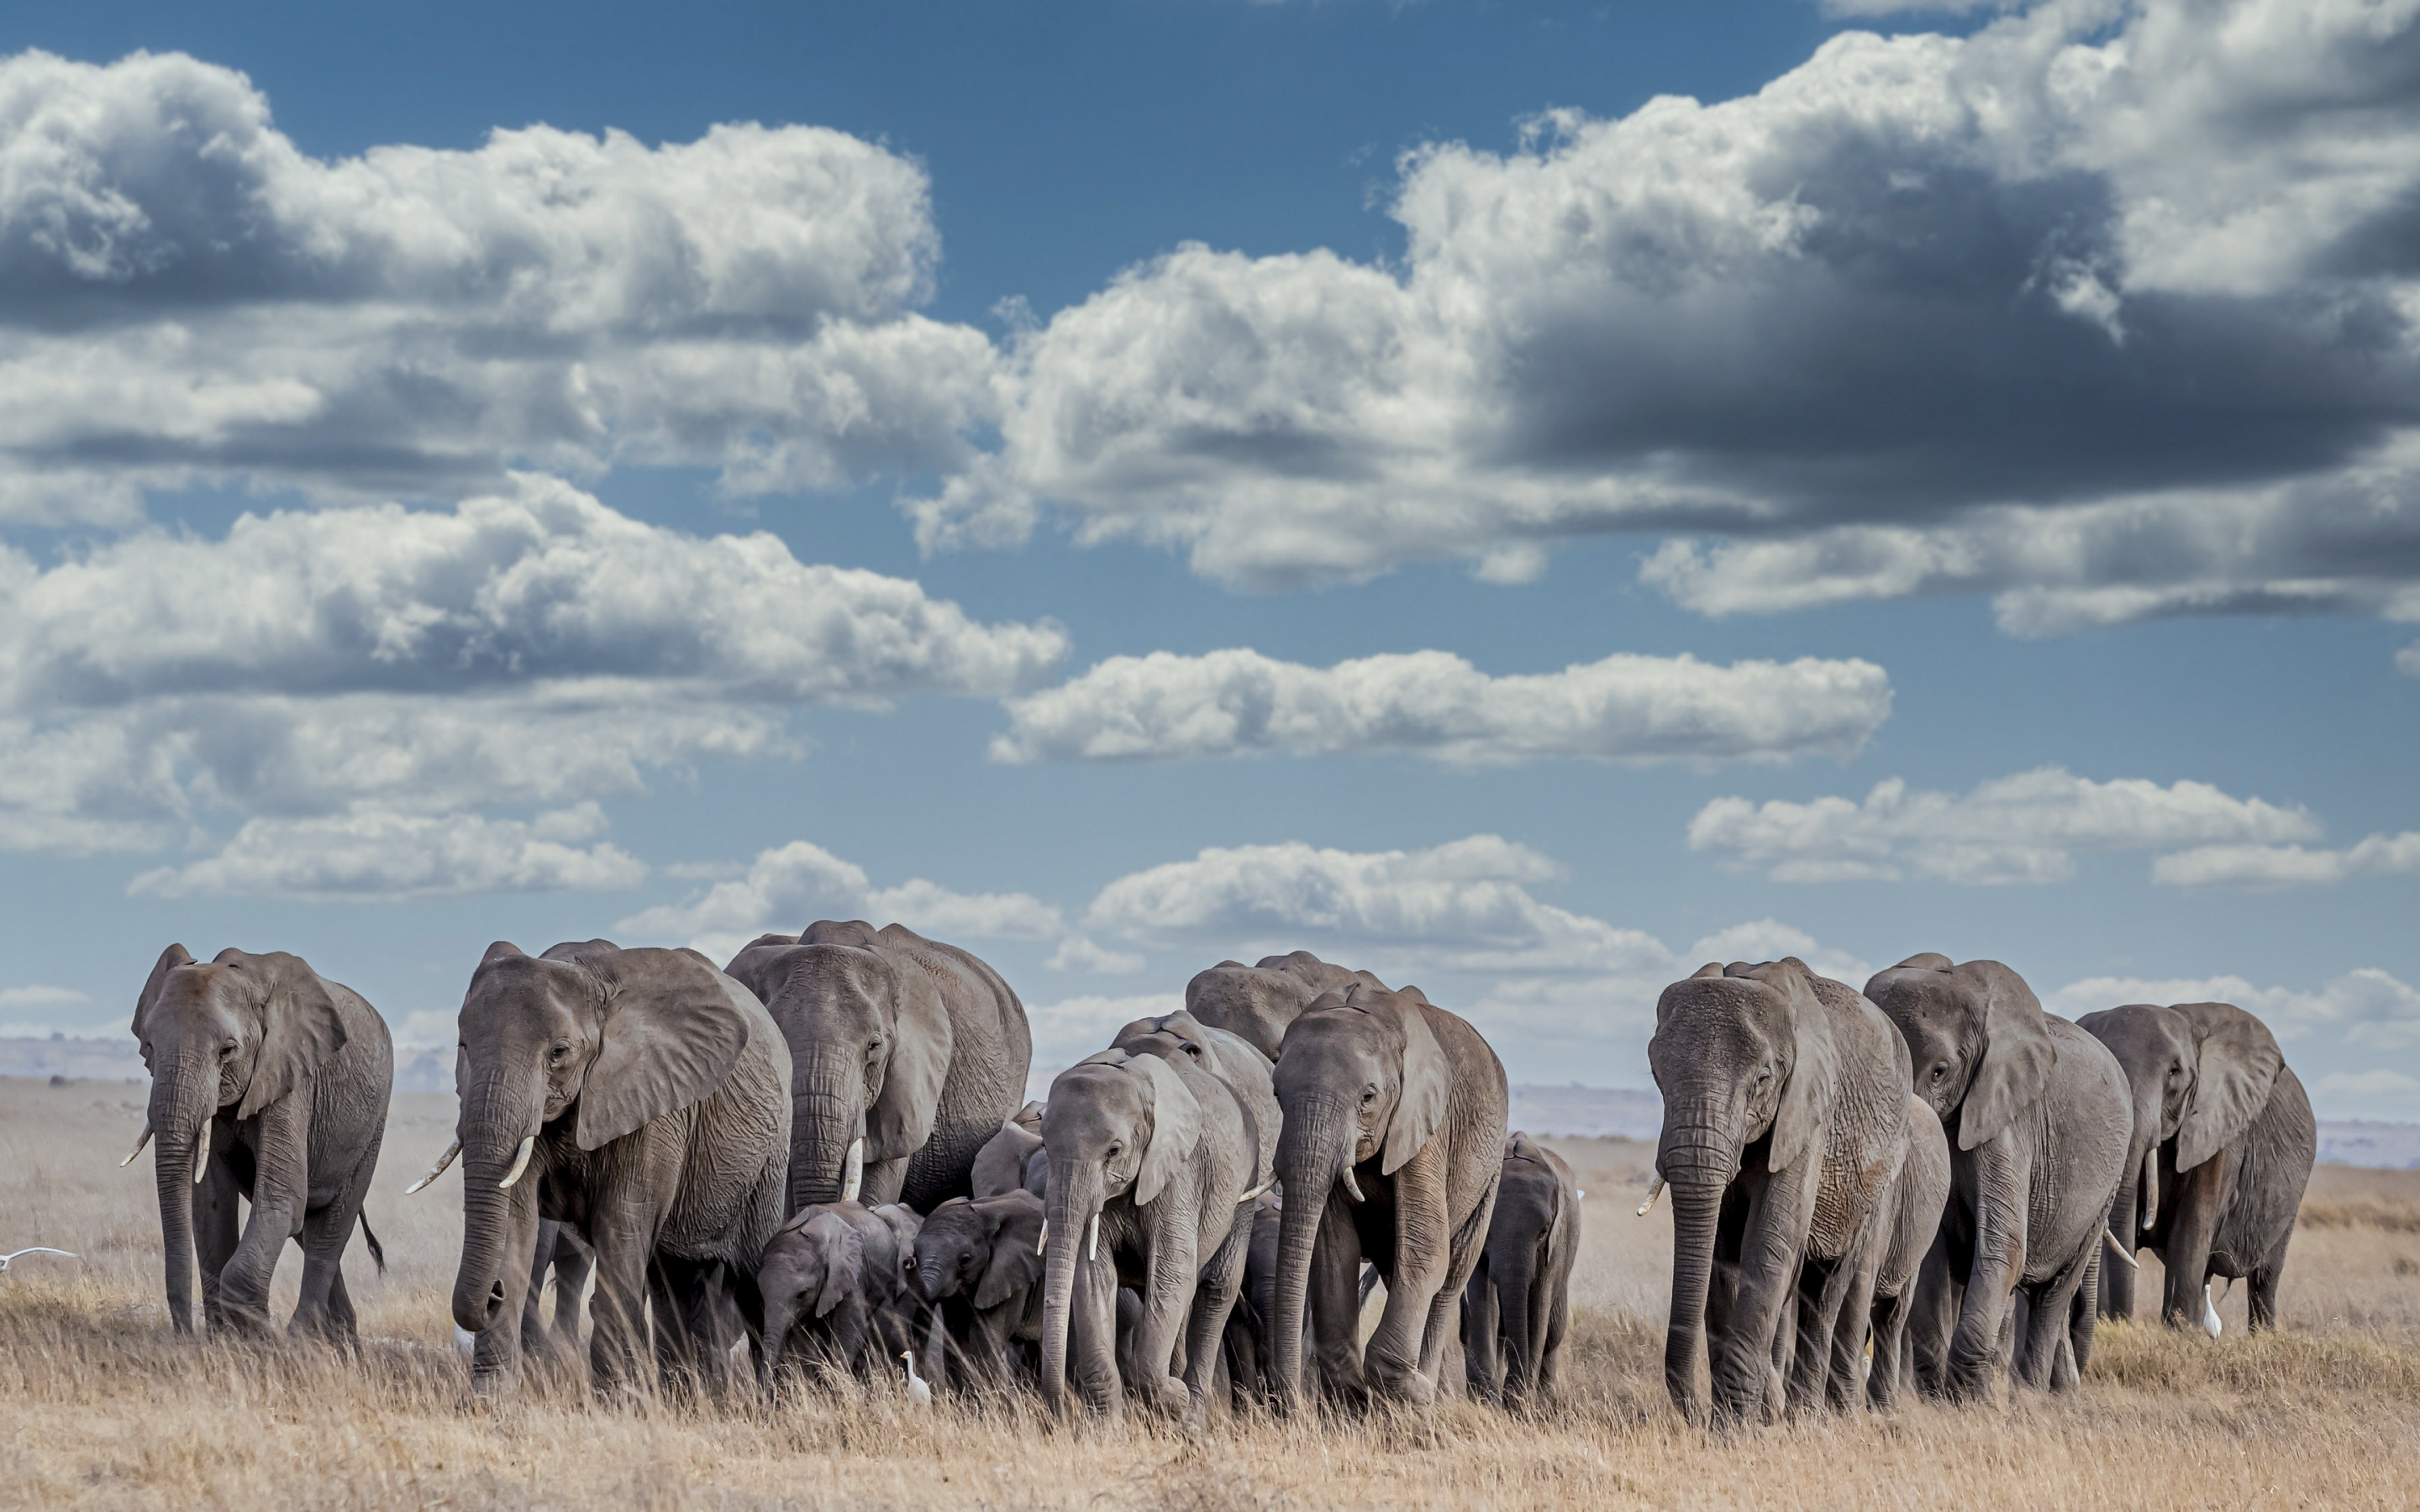 Wildlife, herd, elephants, 2880x1800 wallpaper